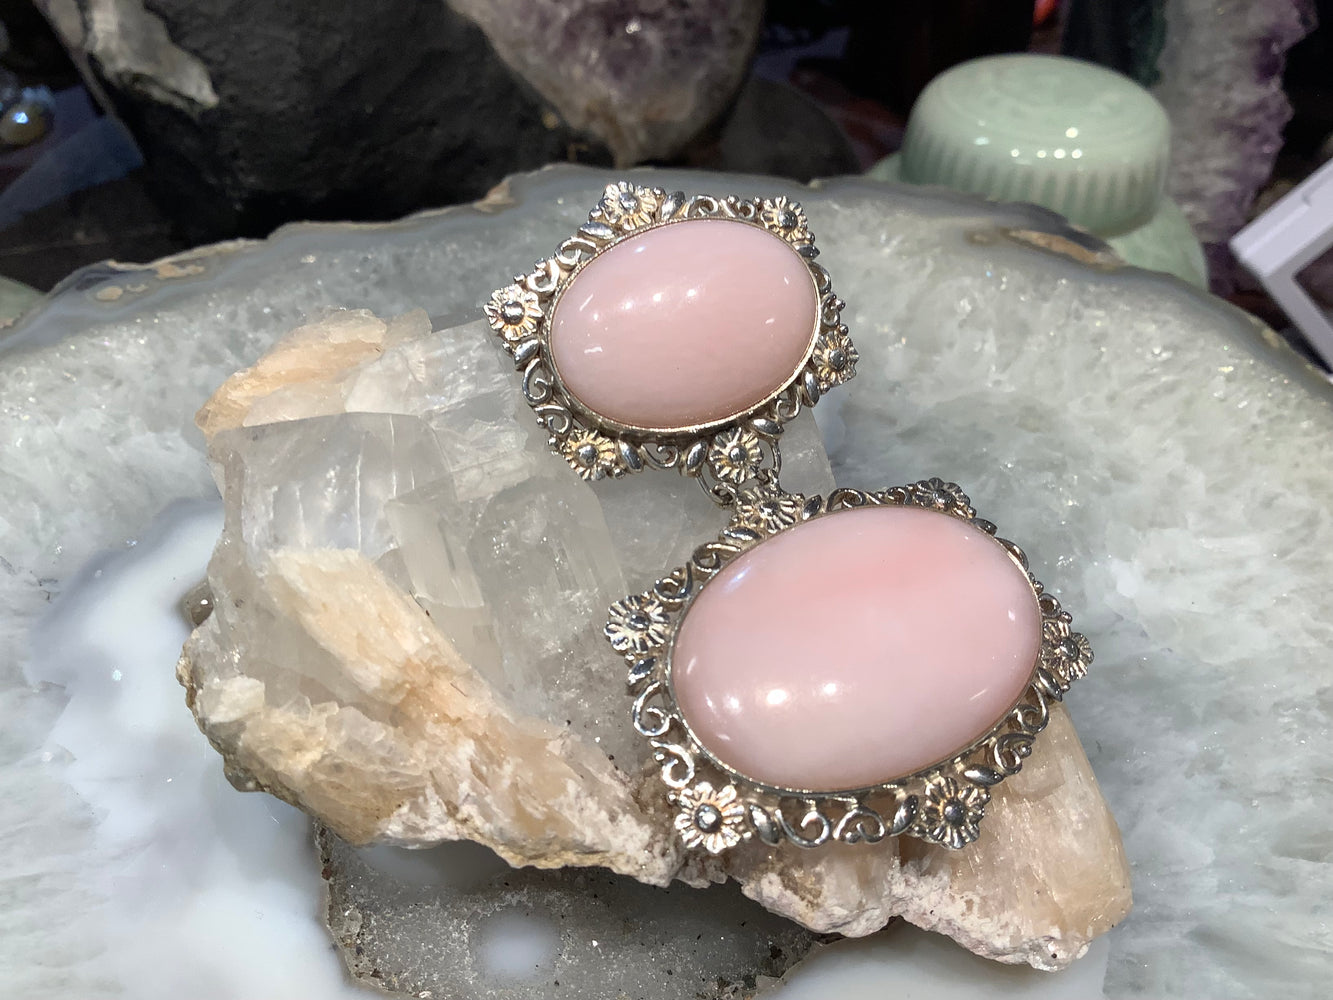 Beautiful Peruvian pink opal & Nepal sterling silver gemstone pendant